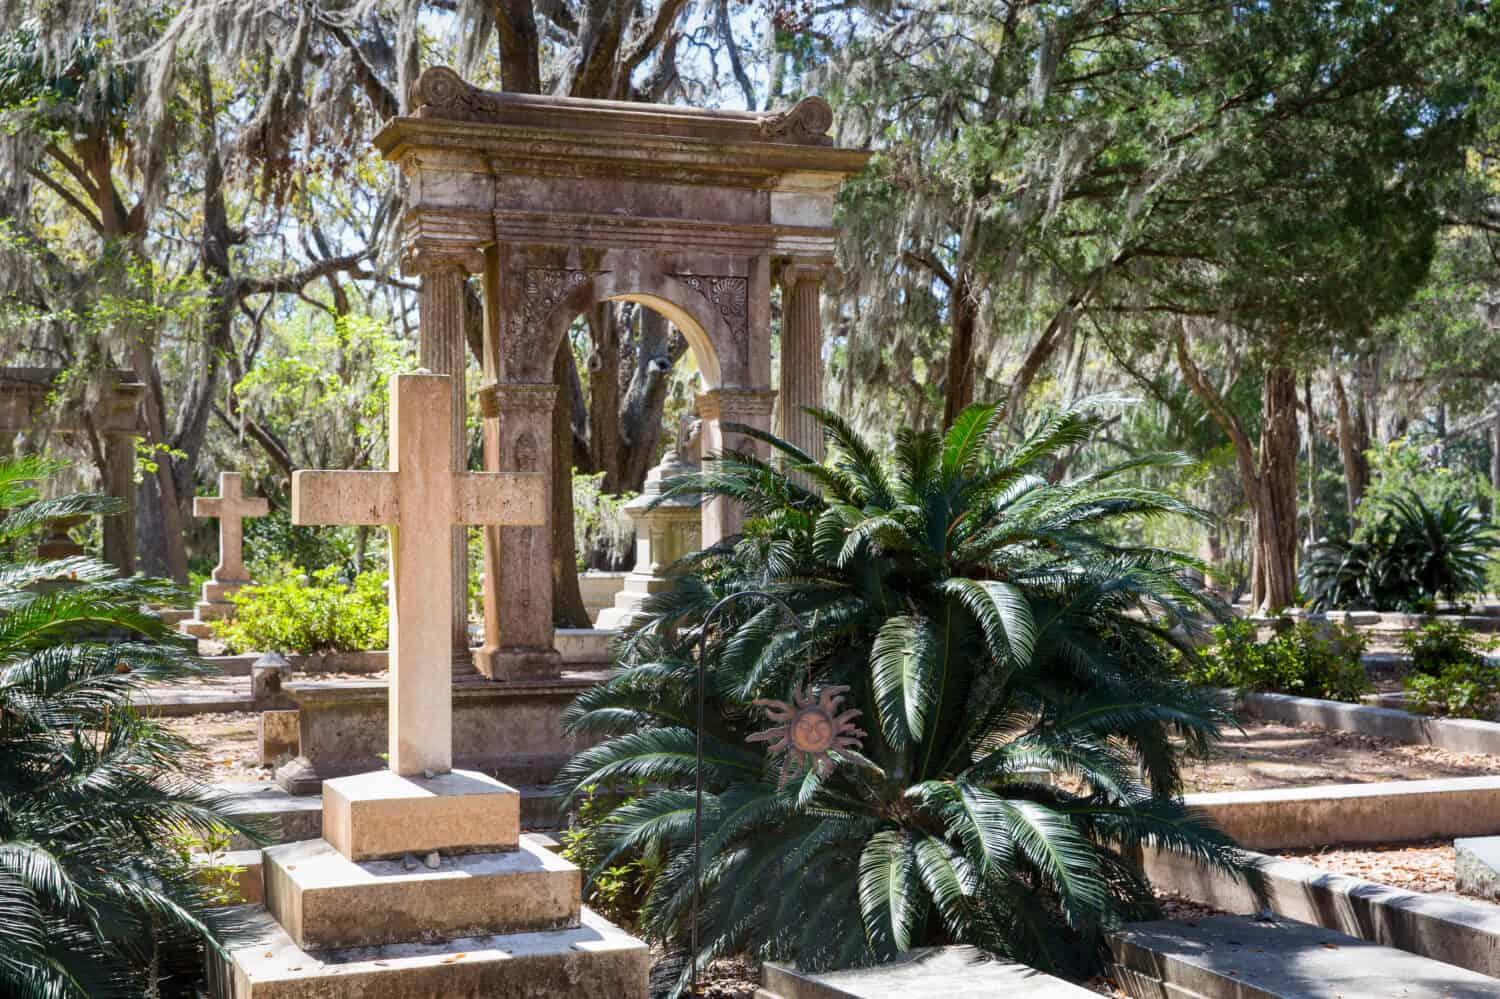 Cimitero storico di Bonaventura a Savannah, GA.  Scena serena con croce prominente in primo piano, vegetazione lussureggiante e muschio spagnolo.